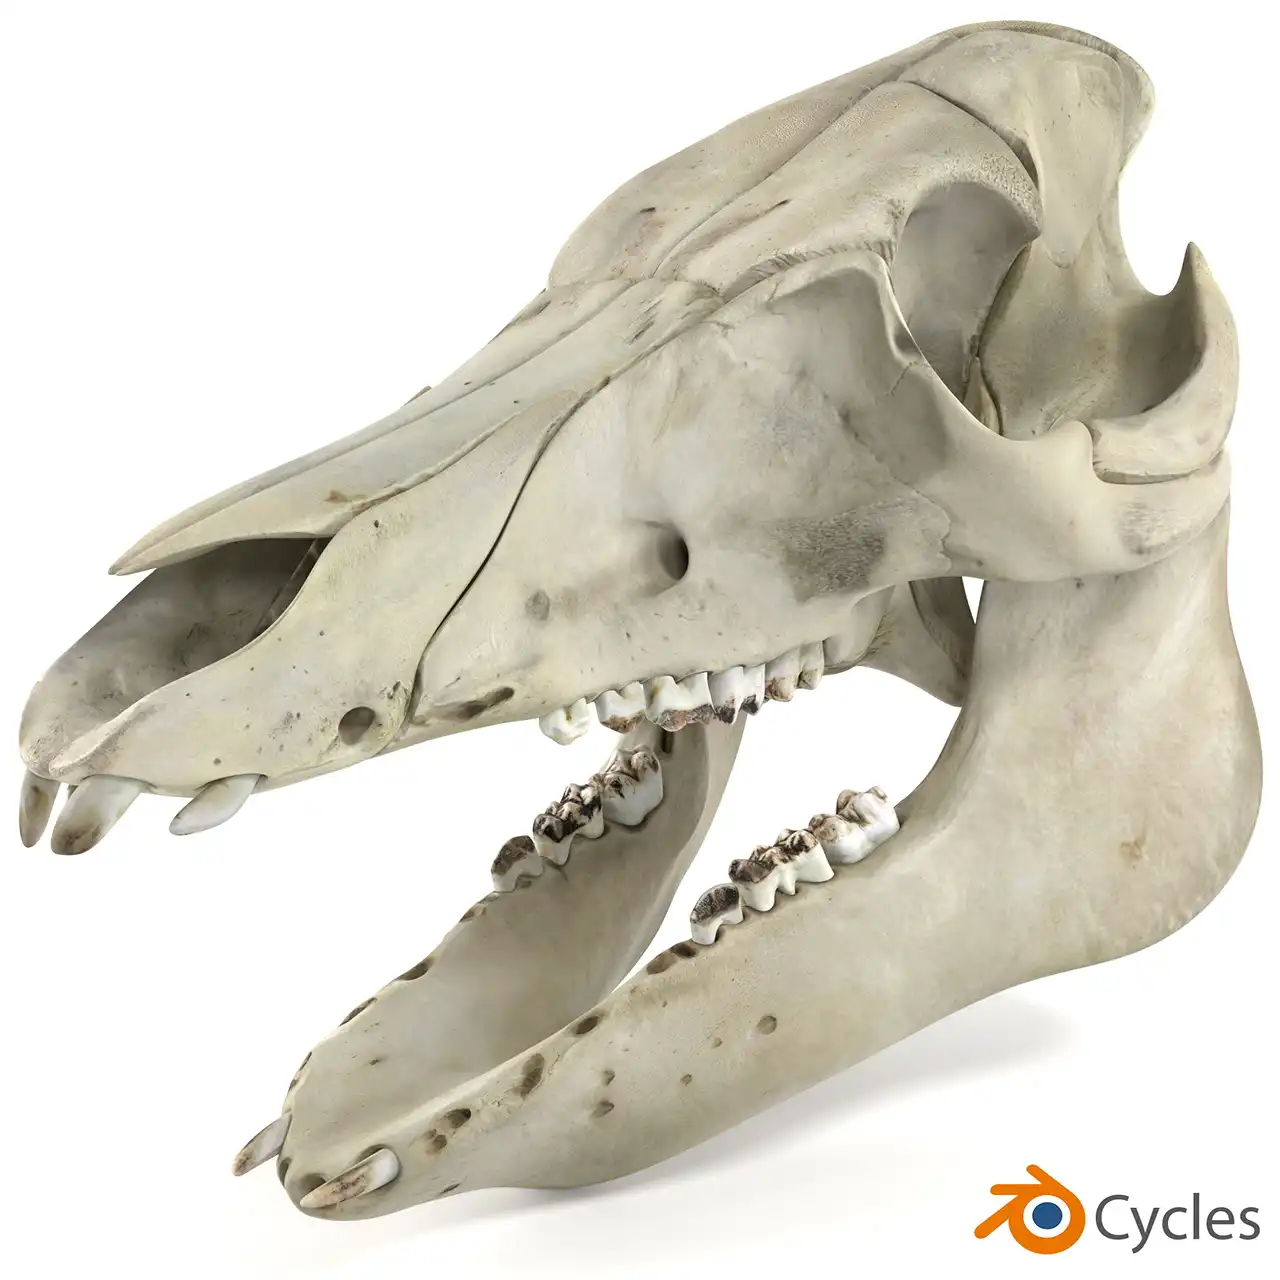 Cycles renderer realistic result tested on pig skull 3d model in Blender.